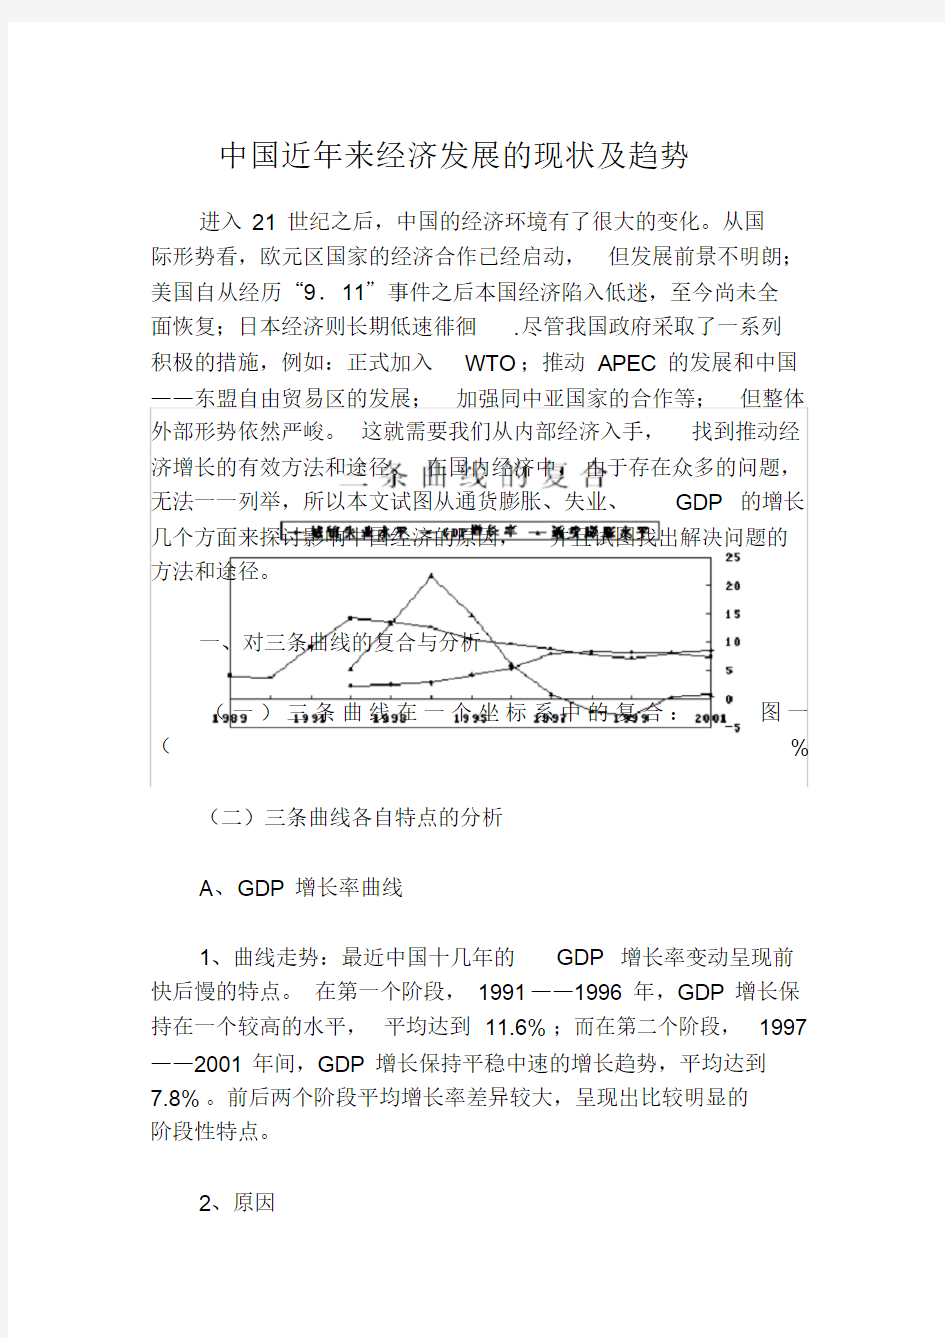 中国近年来经济发展的现状及趋势